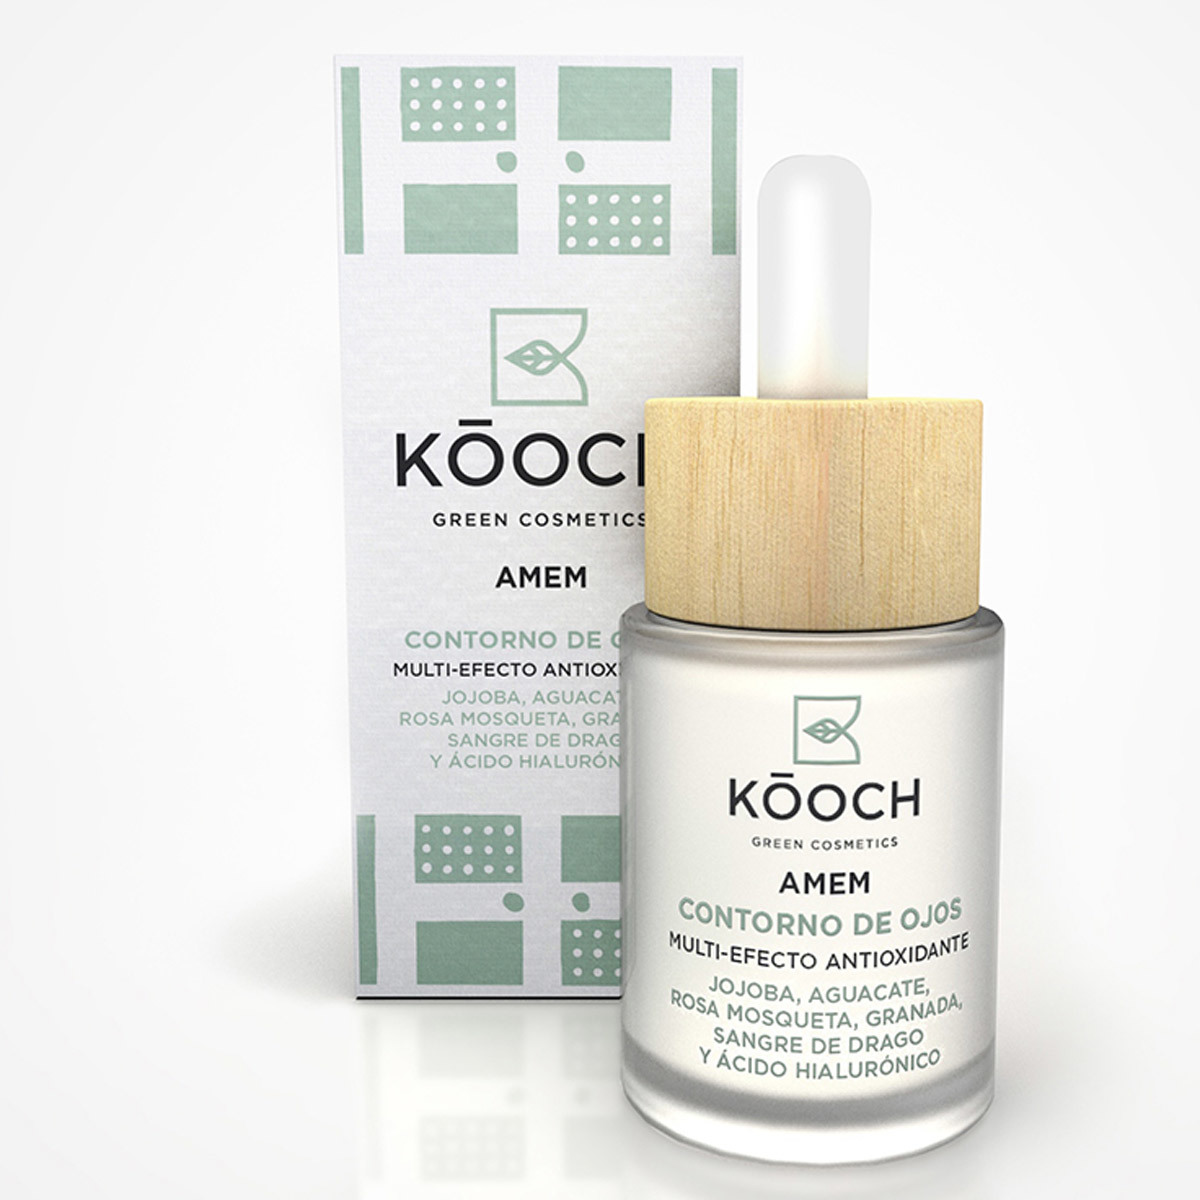 Contorno de ojos multi-efecto antioxidante y regenerante AMEM de Kóoch Cosmetics.